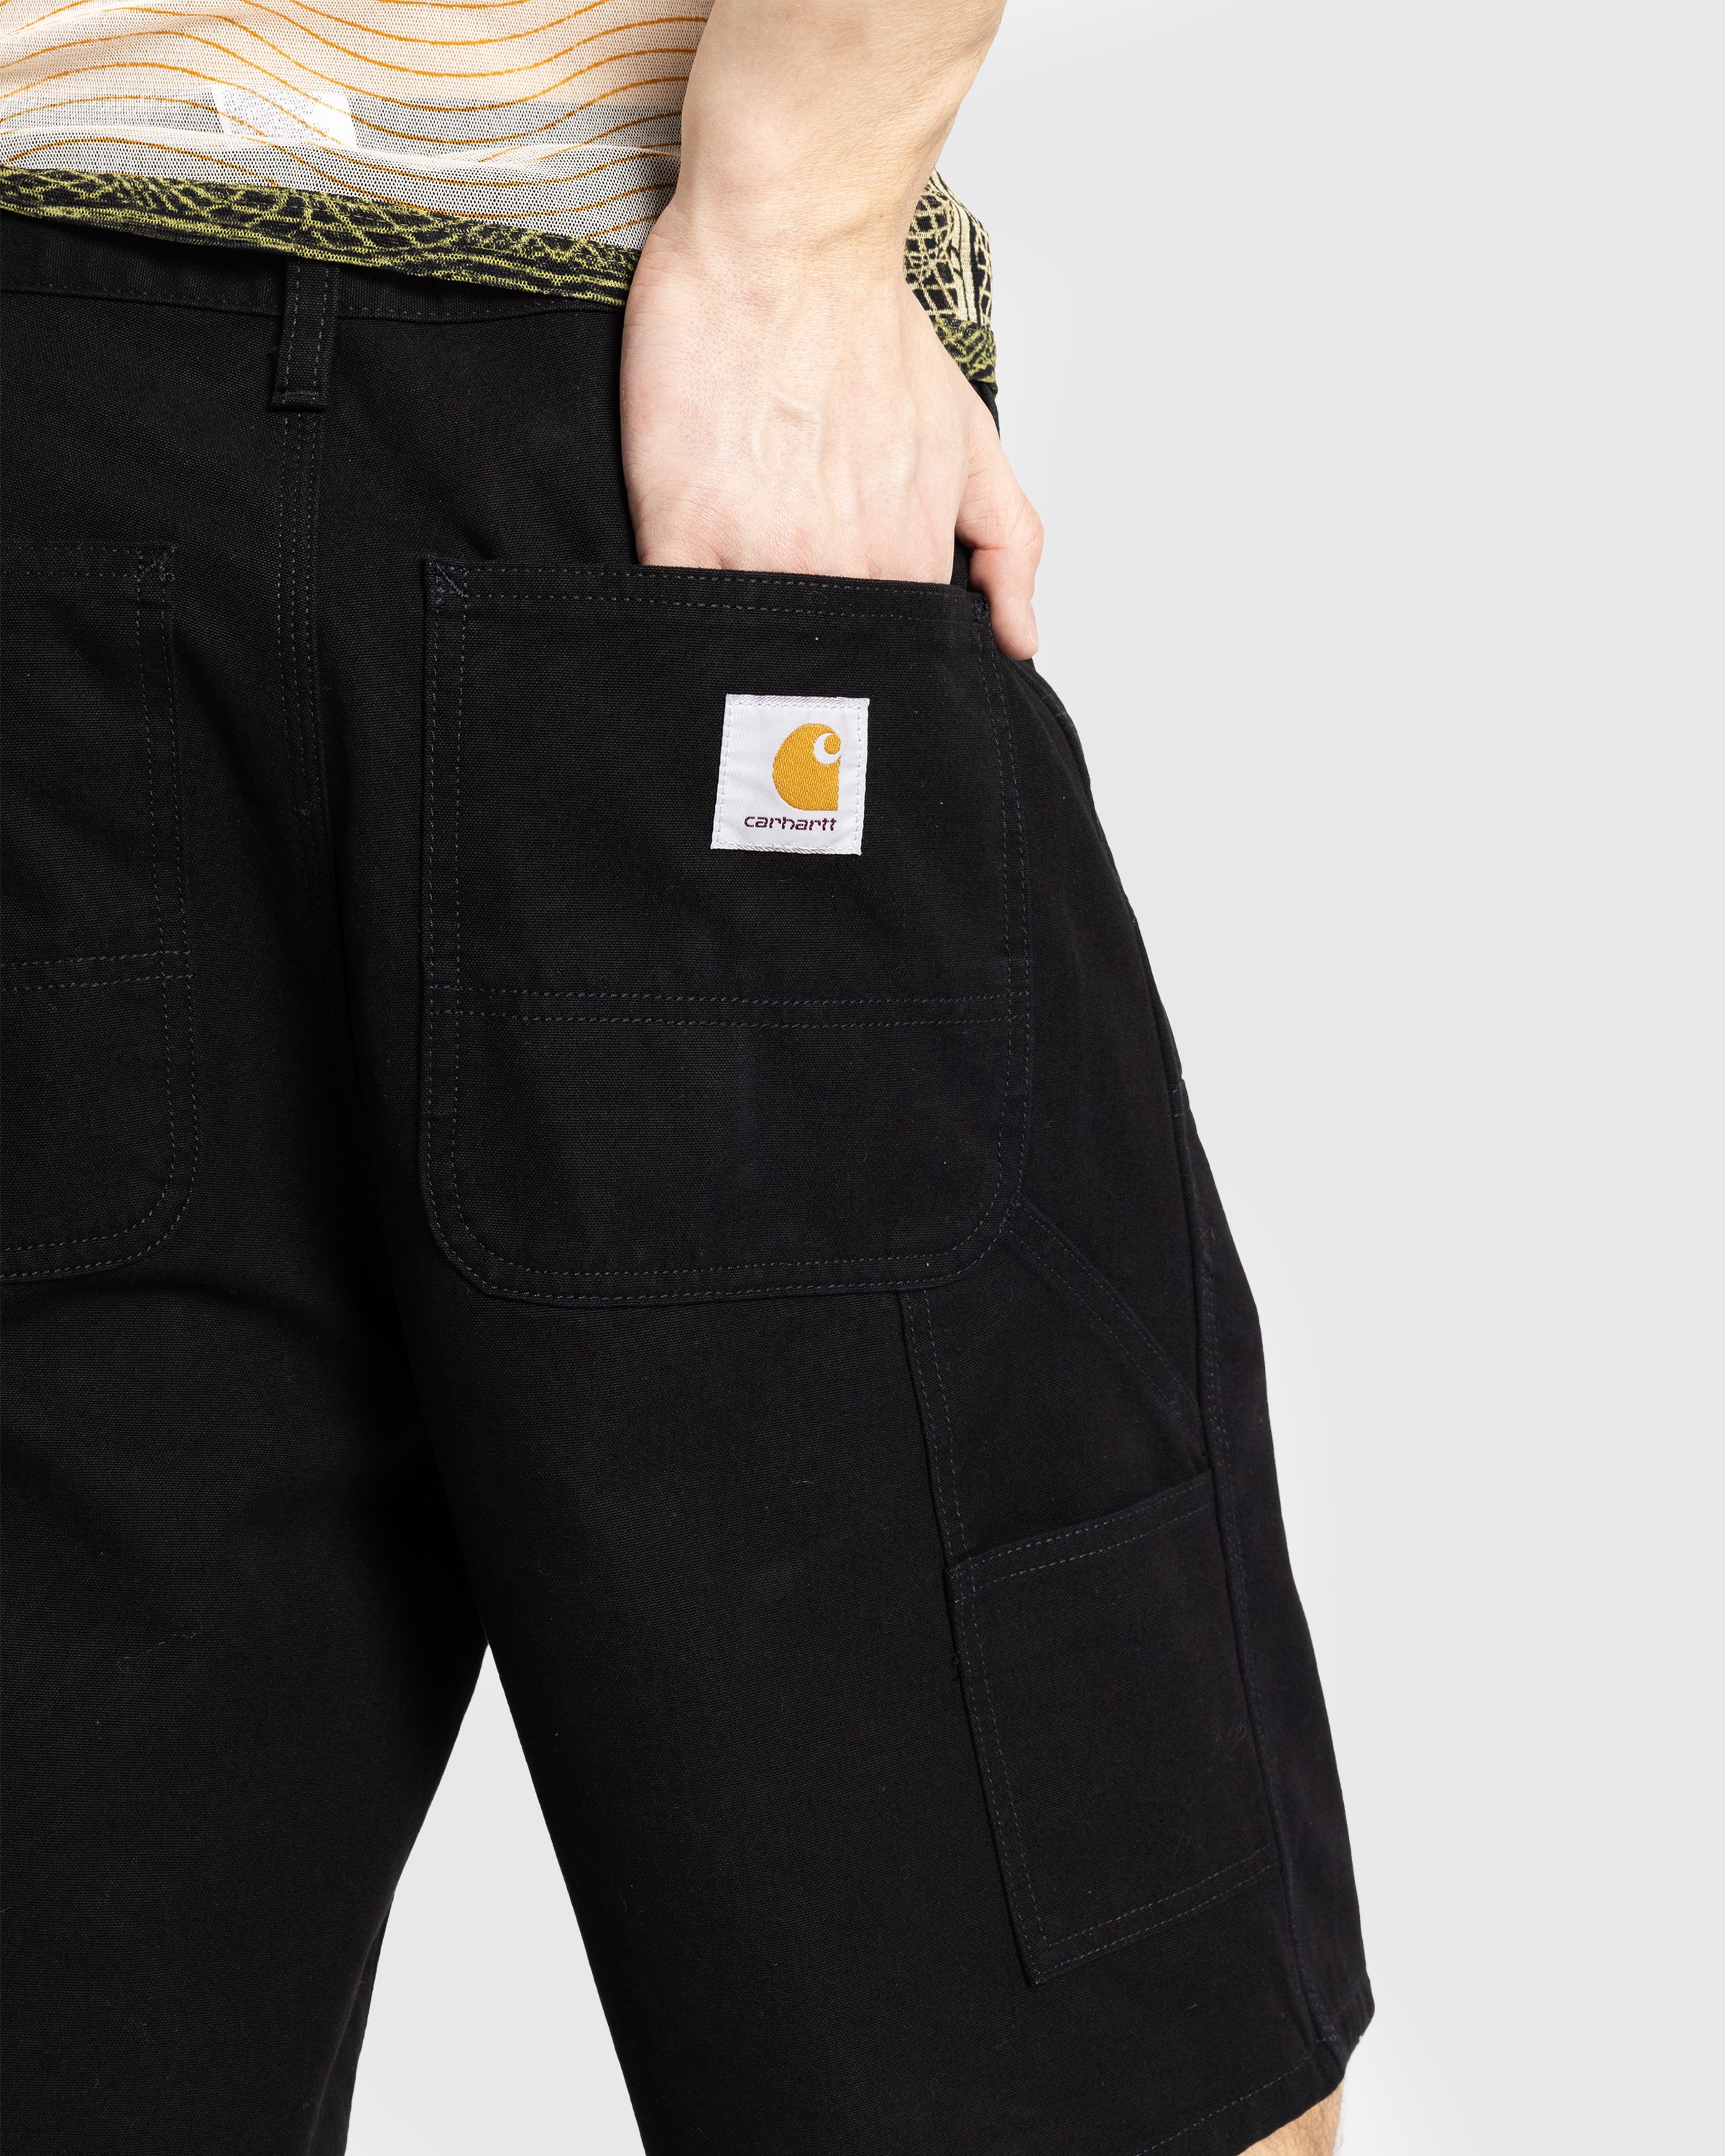 Carhartt WIP - Double Knee Short Black /rinsed - Clothing - Black - Image 5